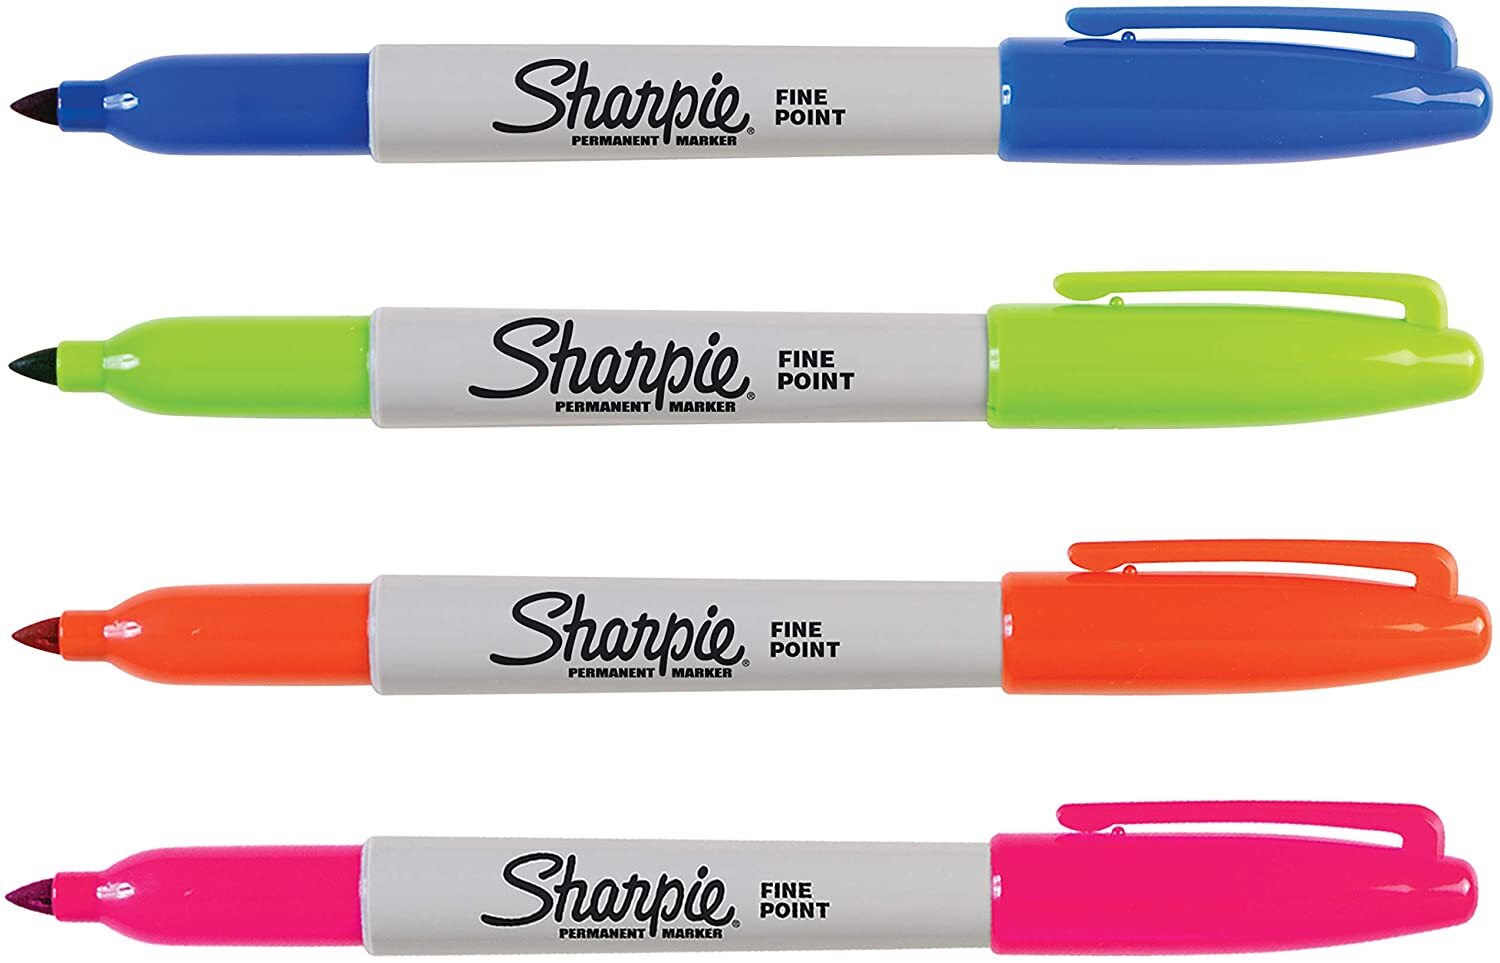 La personalización a mano con rotuladores Sharpie - Blog Brildor